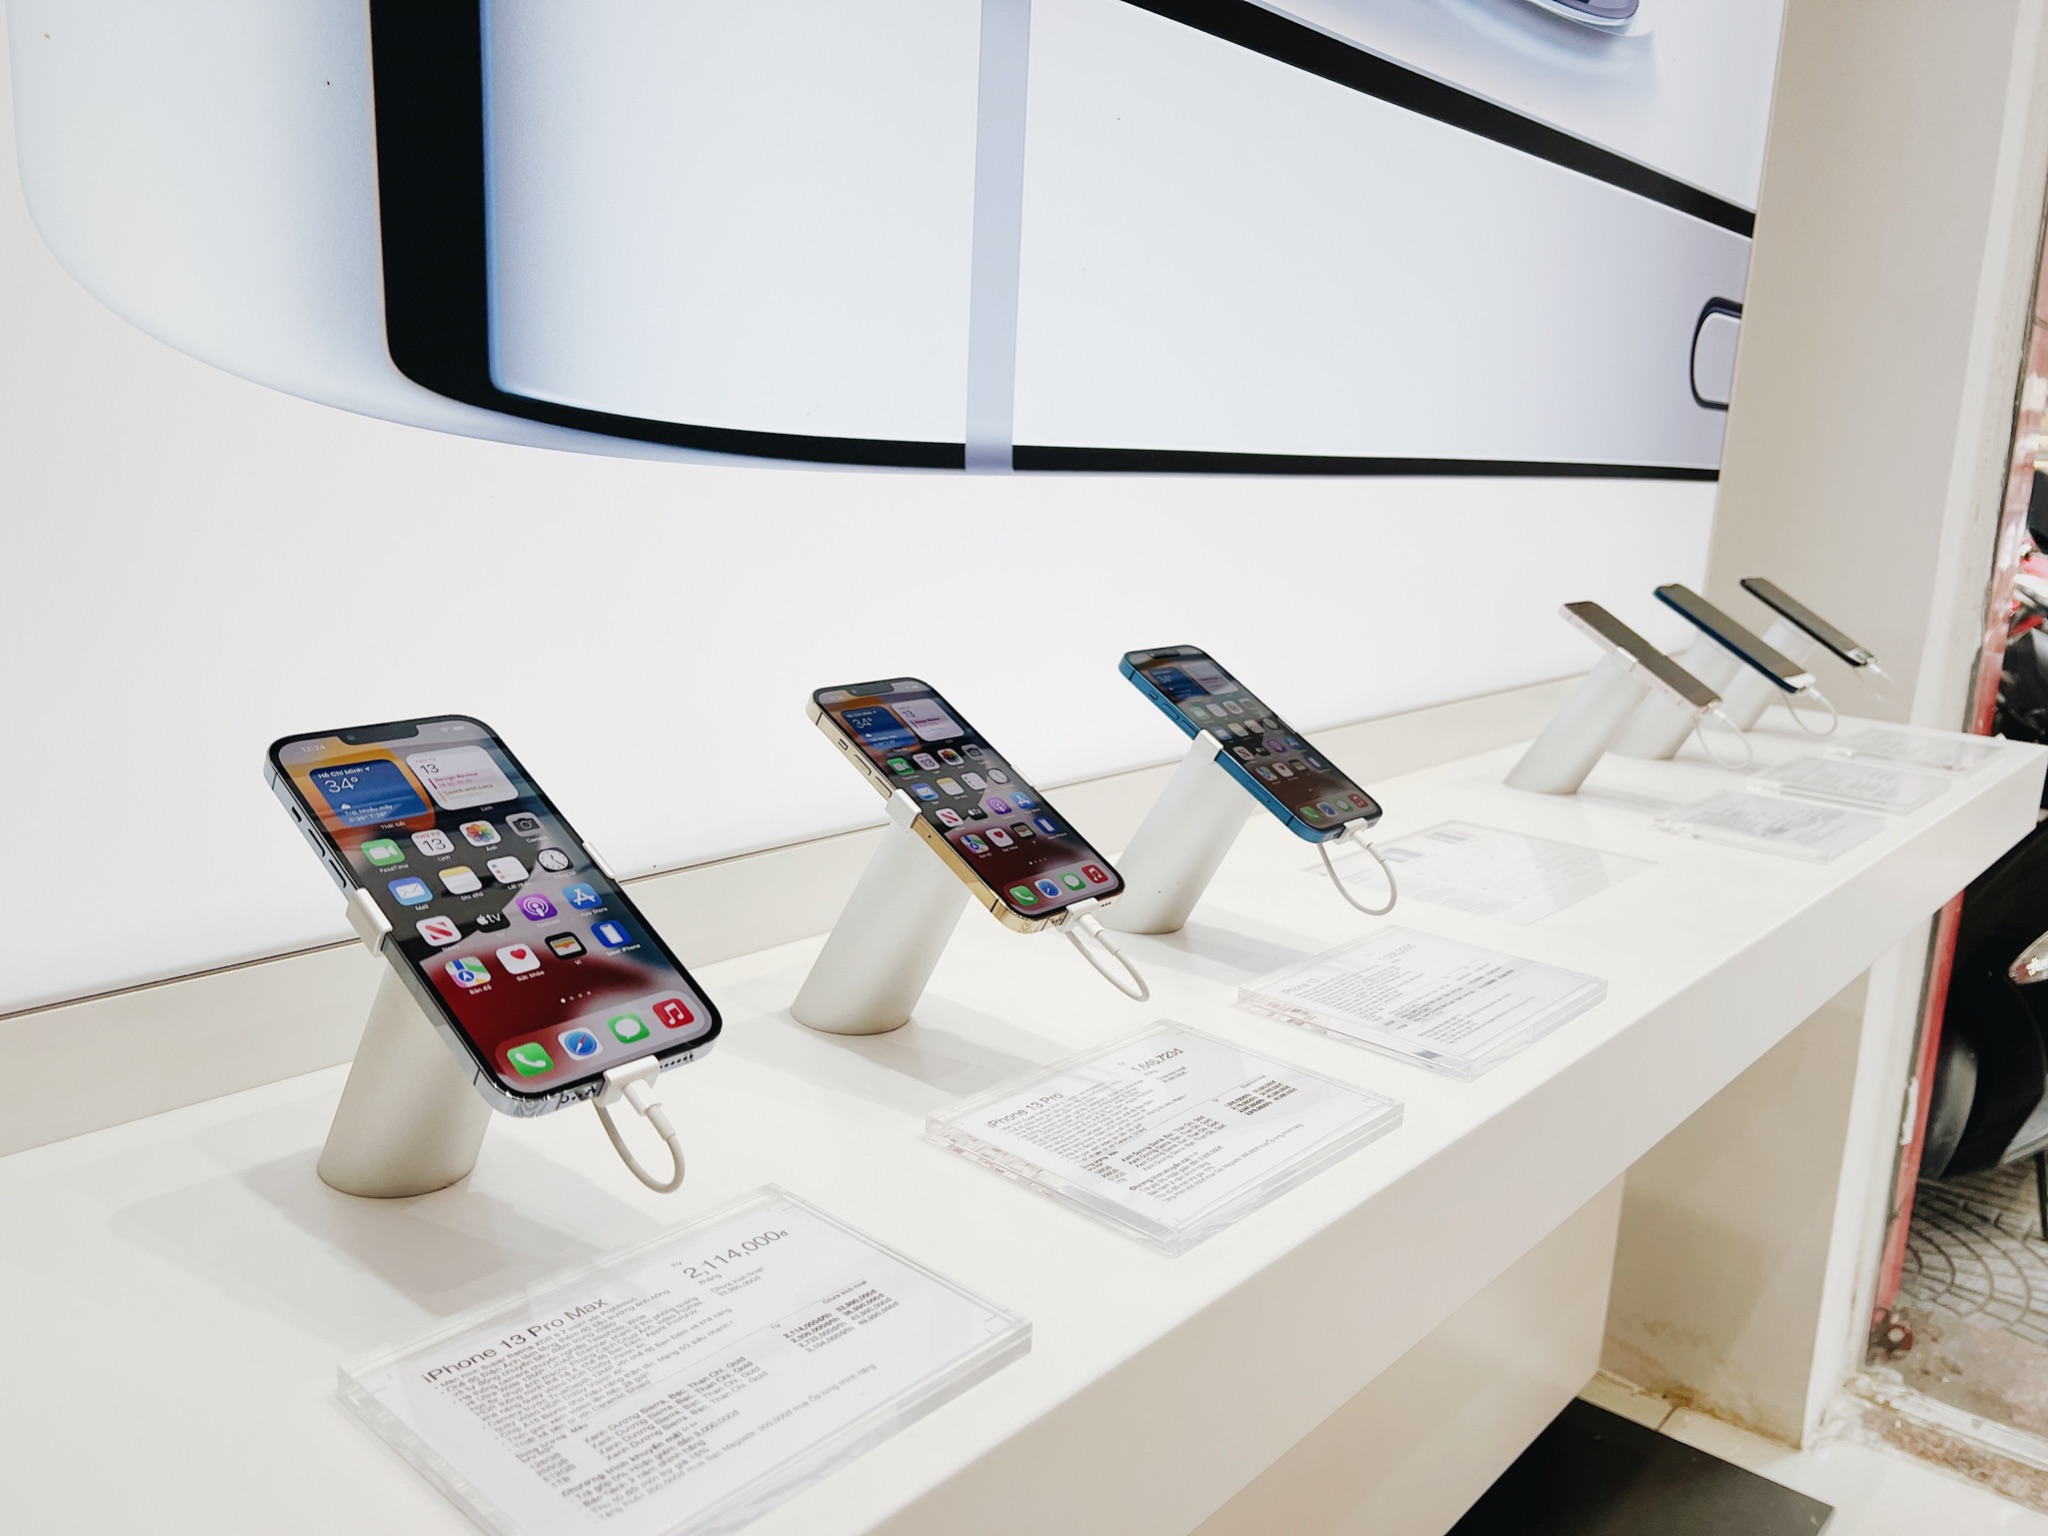 iPhone SE (2022) lên kệ sớm nhất tại FPT Shop, giá chỉ từ 11.99 triệu